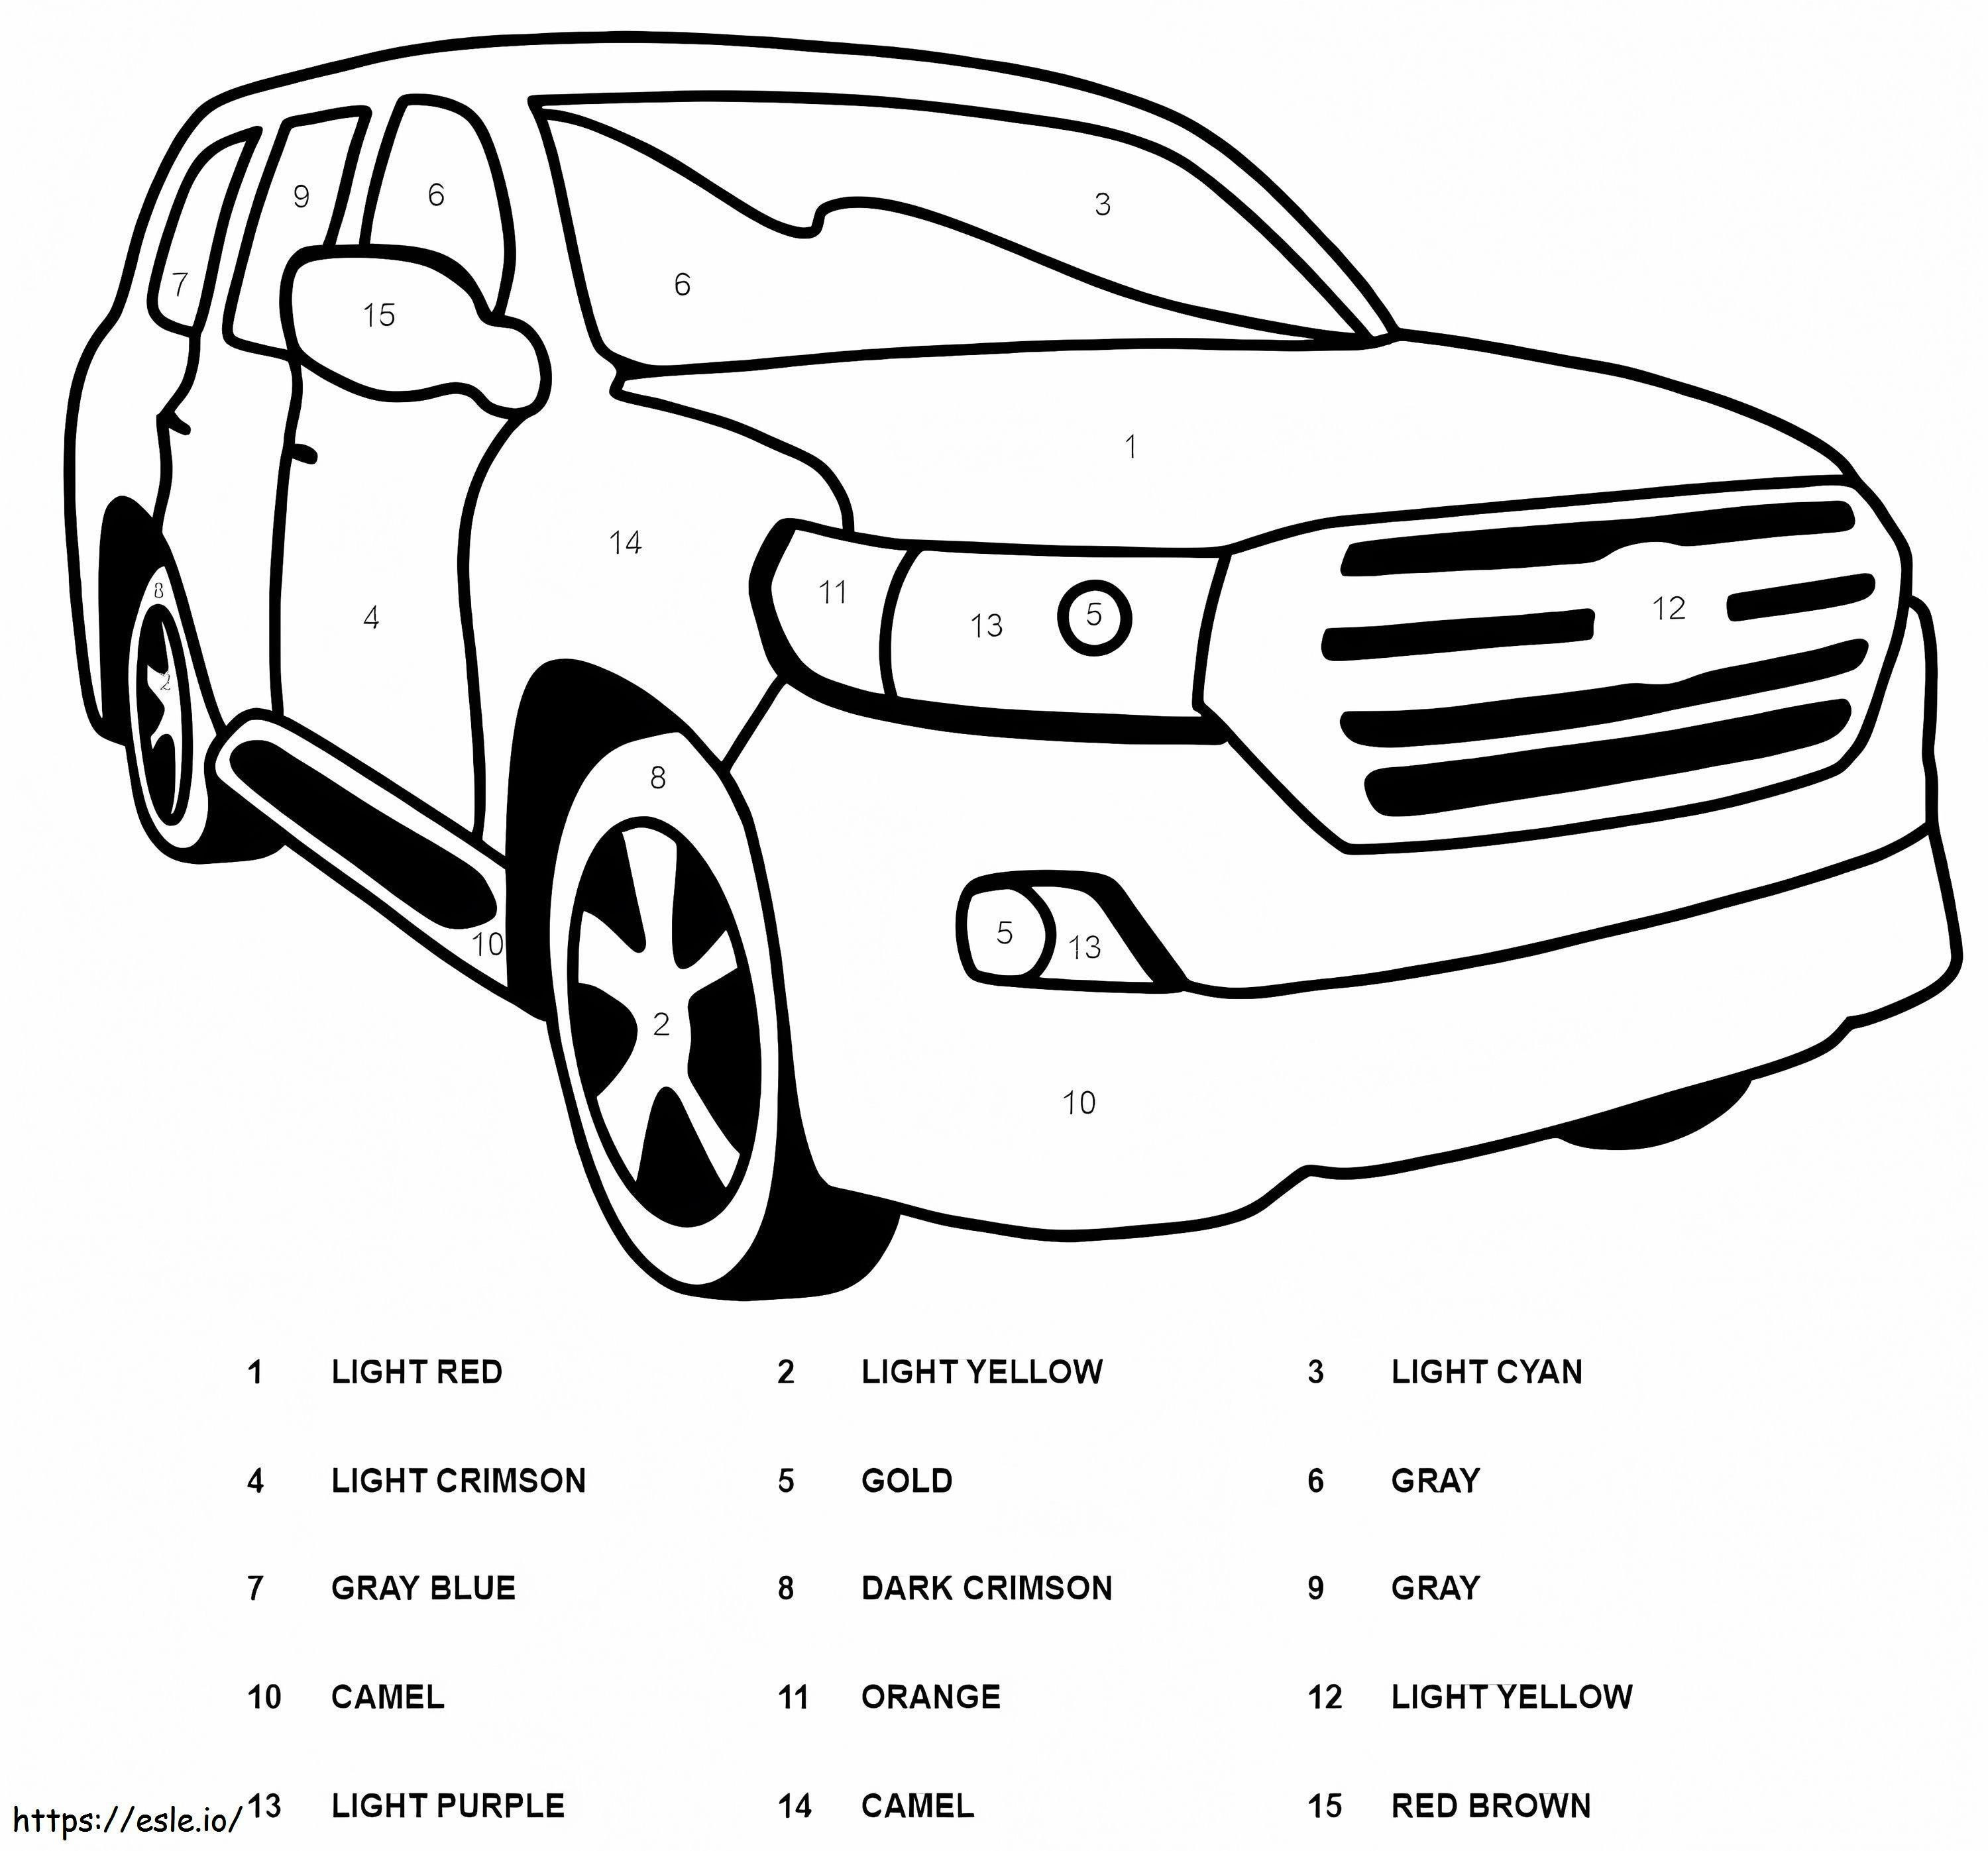 Warna Mobil Toyota Berdasarkan Nomor Gambar Mewarnai